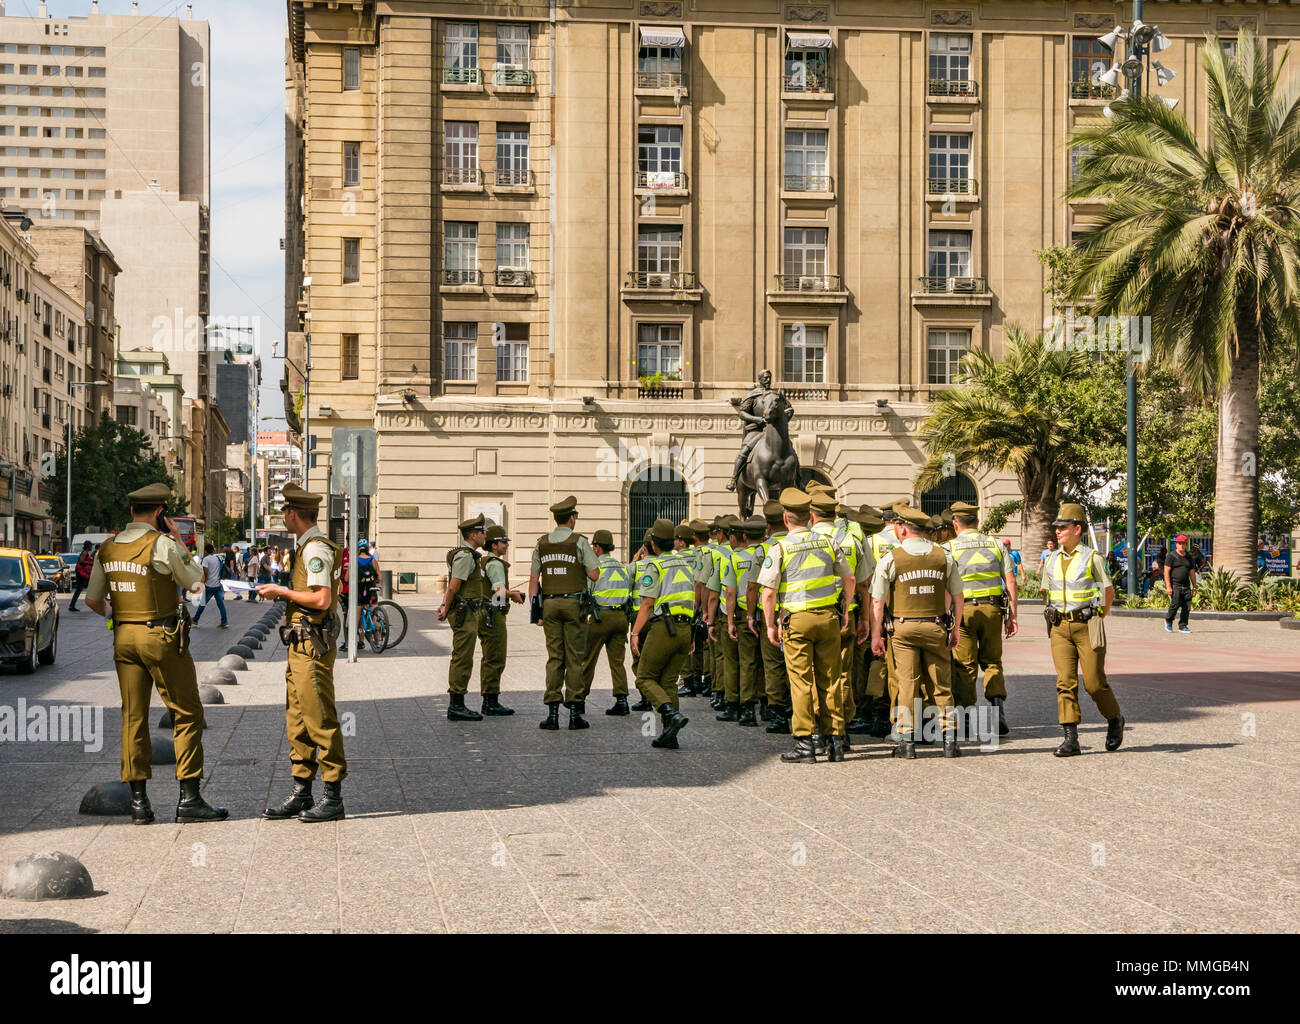 El Viernes Santo, Carabineros o policía Chilena alineadas, Plaza de Armas, Santiago de Chile, Sudamérica Foto de stock